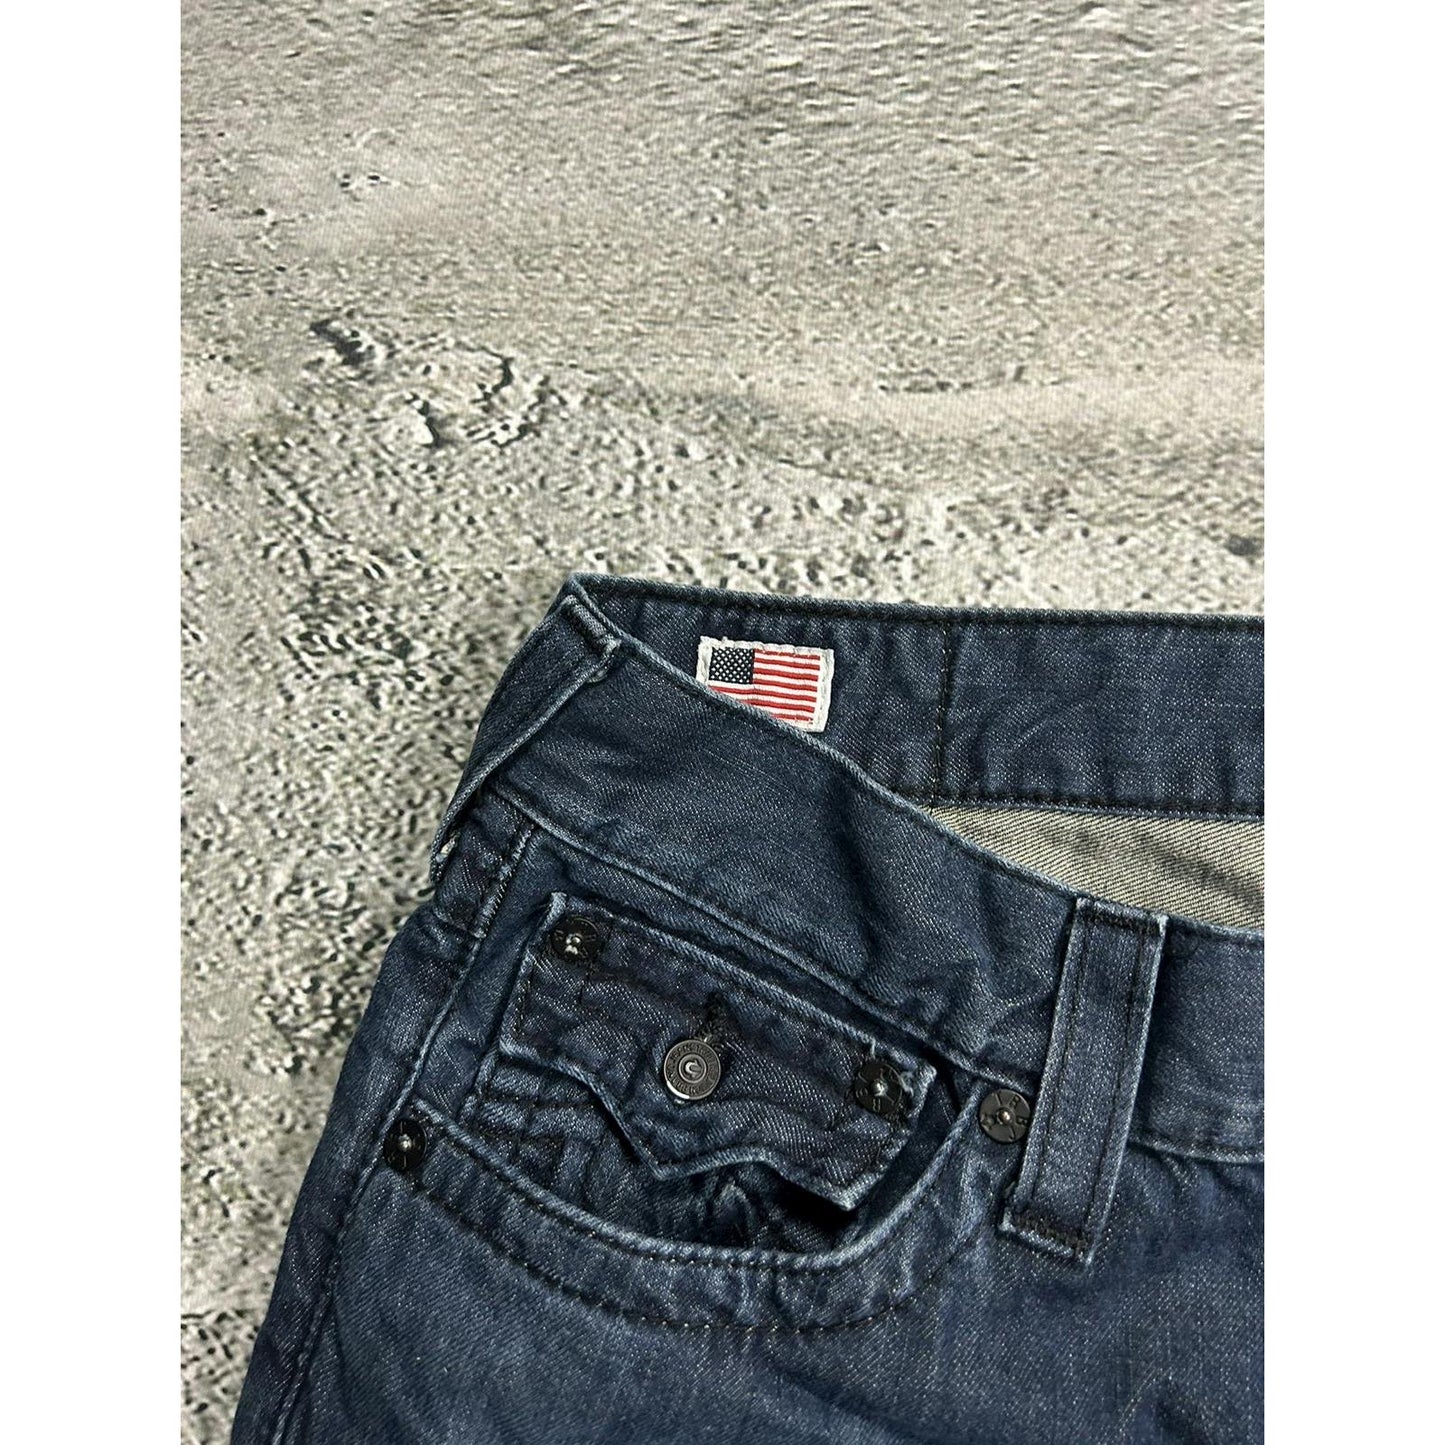 True Religion vintage jeans navy thick stitching orange Y2K